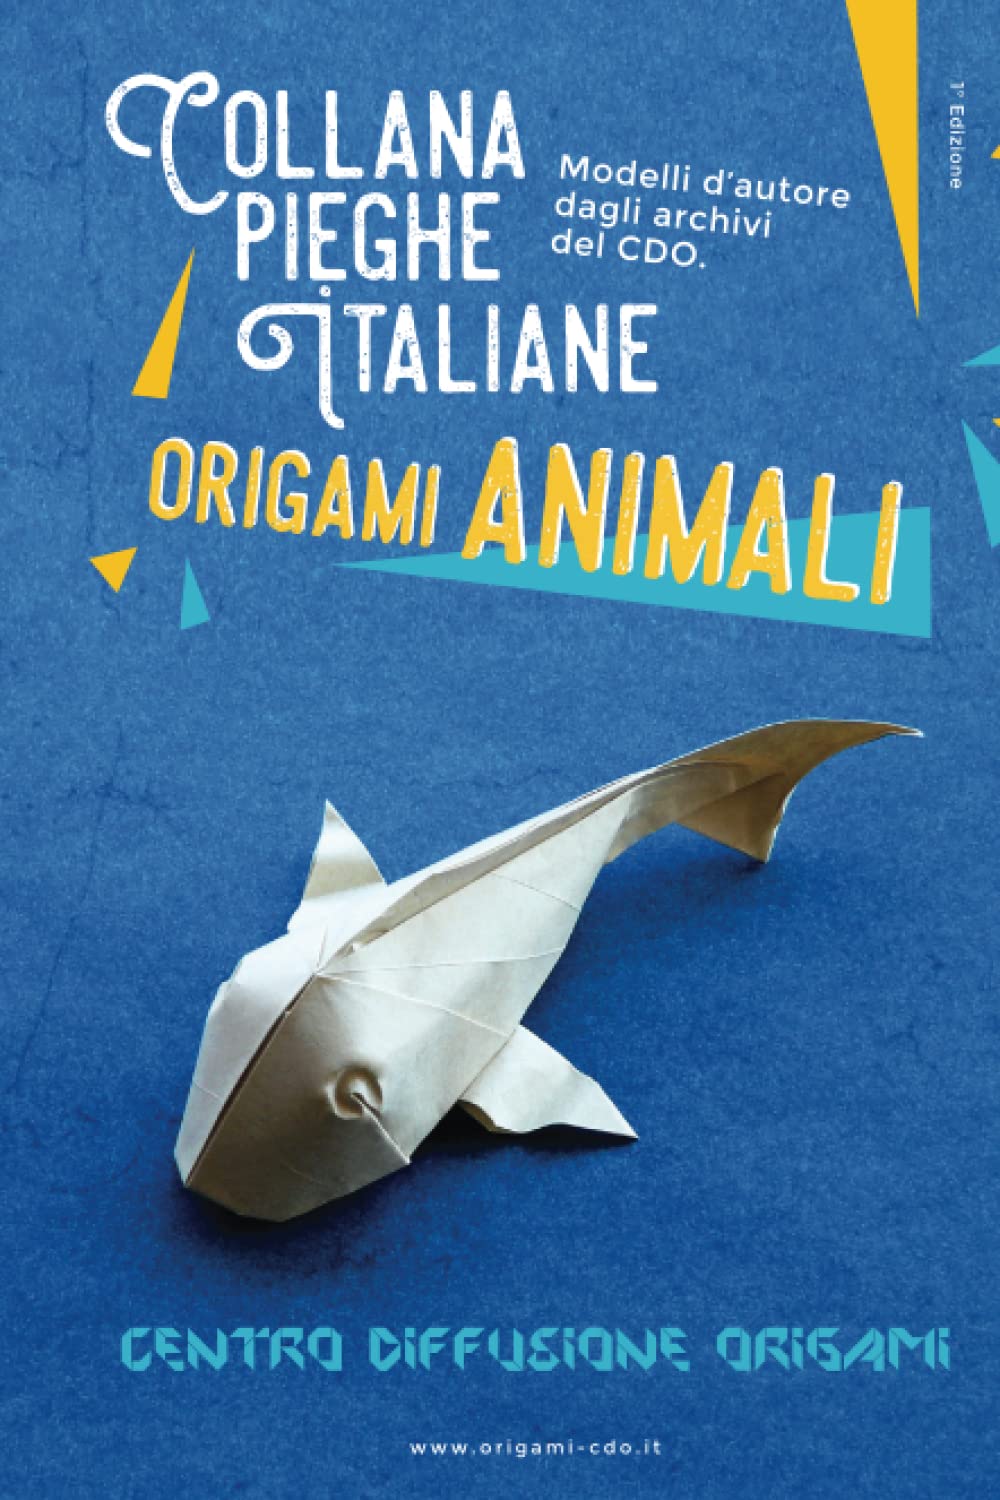 Collana pieghe Italiane - origami ANIMALI